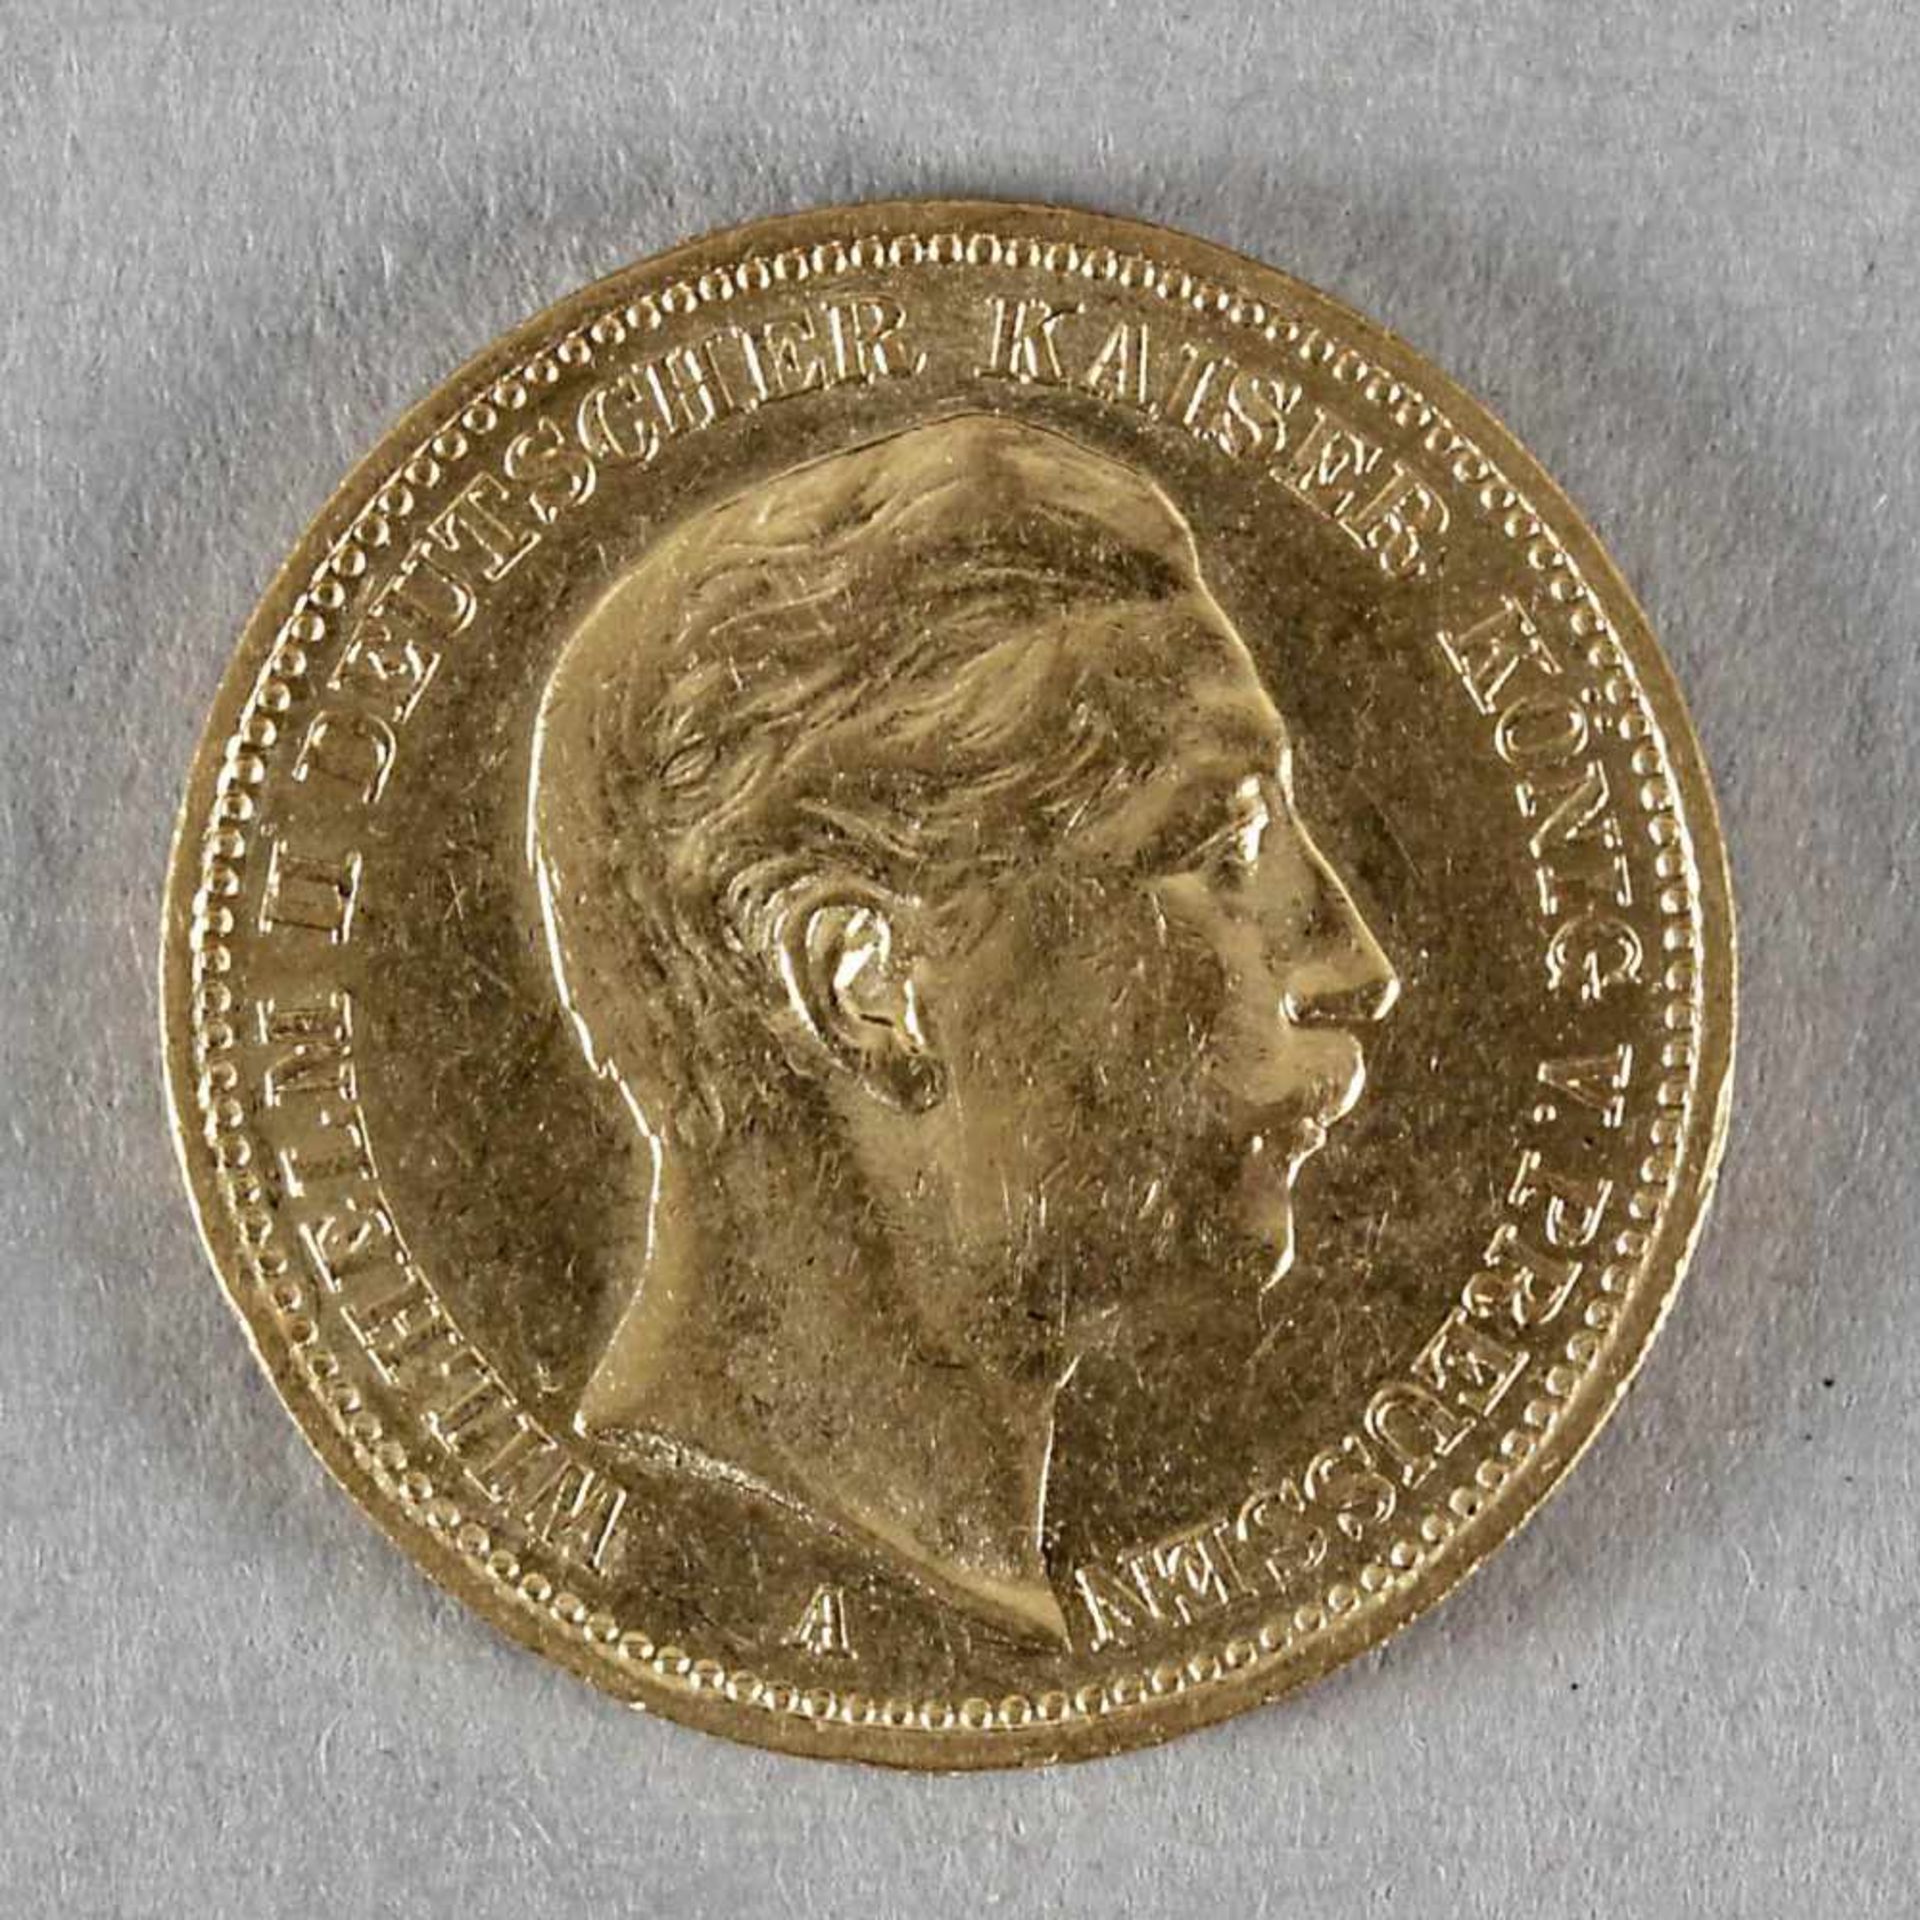 Goldmünze, 20 Mark, Wilhelm II. von Preußen, 1900 A